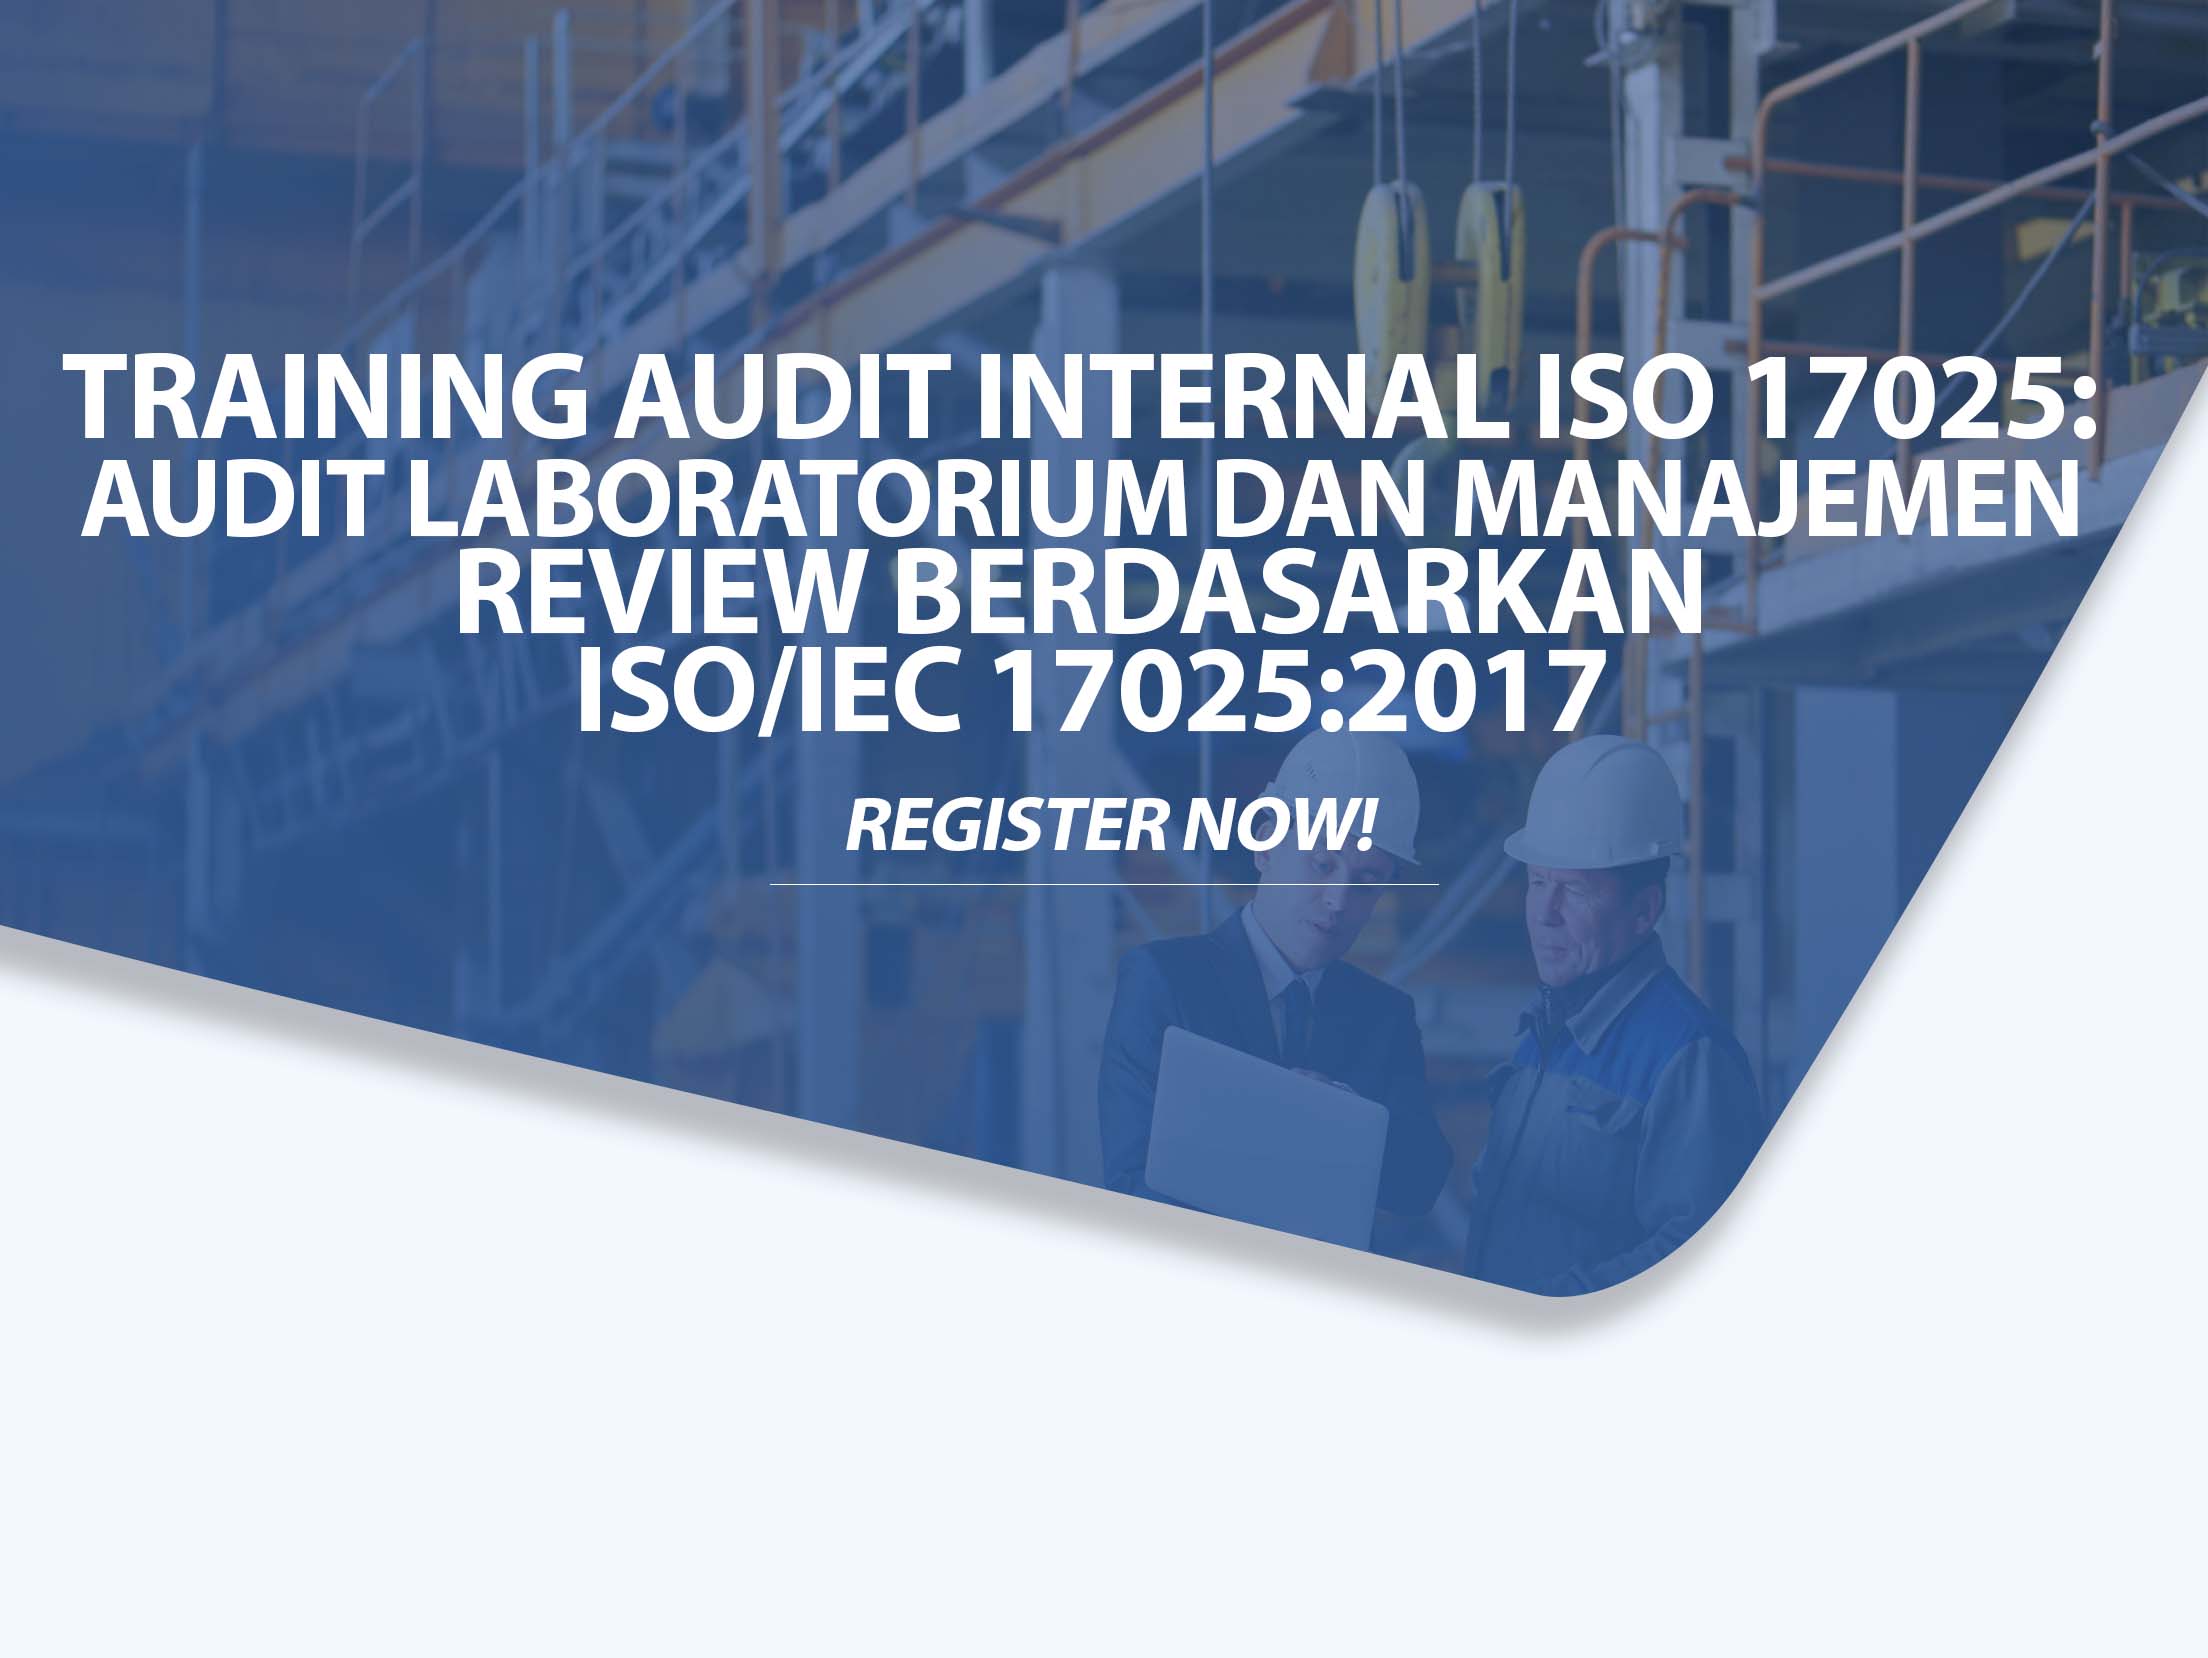 Training Audit Internal ISO 17025 Audit Laboratorium dan Manajemen Review berdasarkan ISO IEC 17025 2017